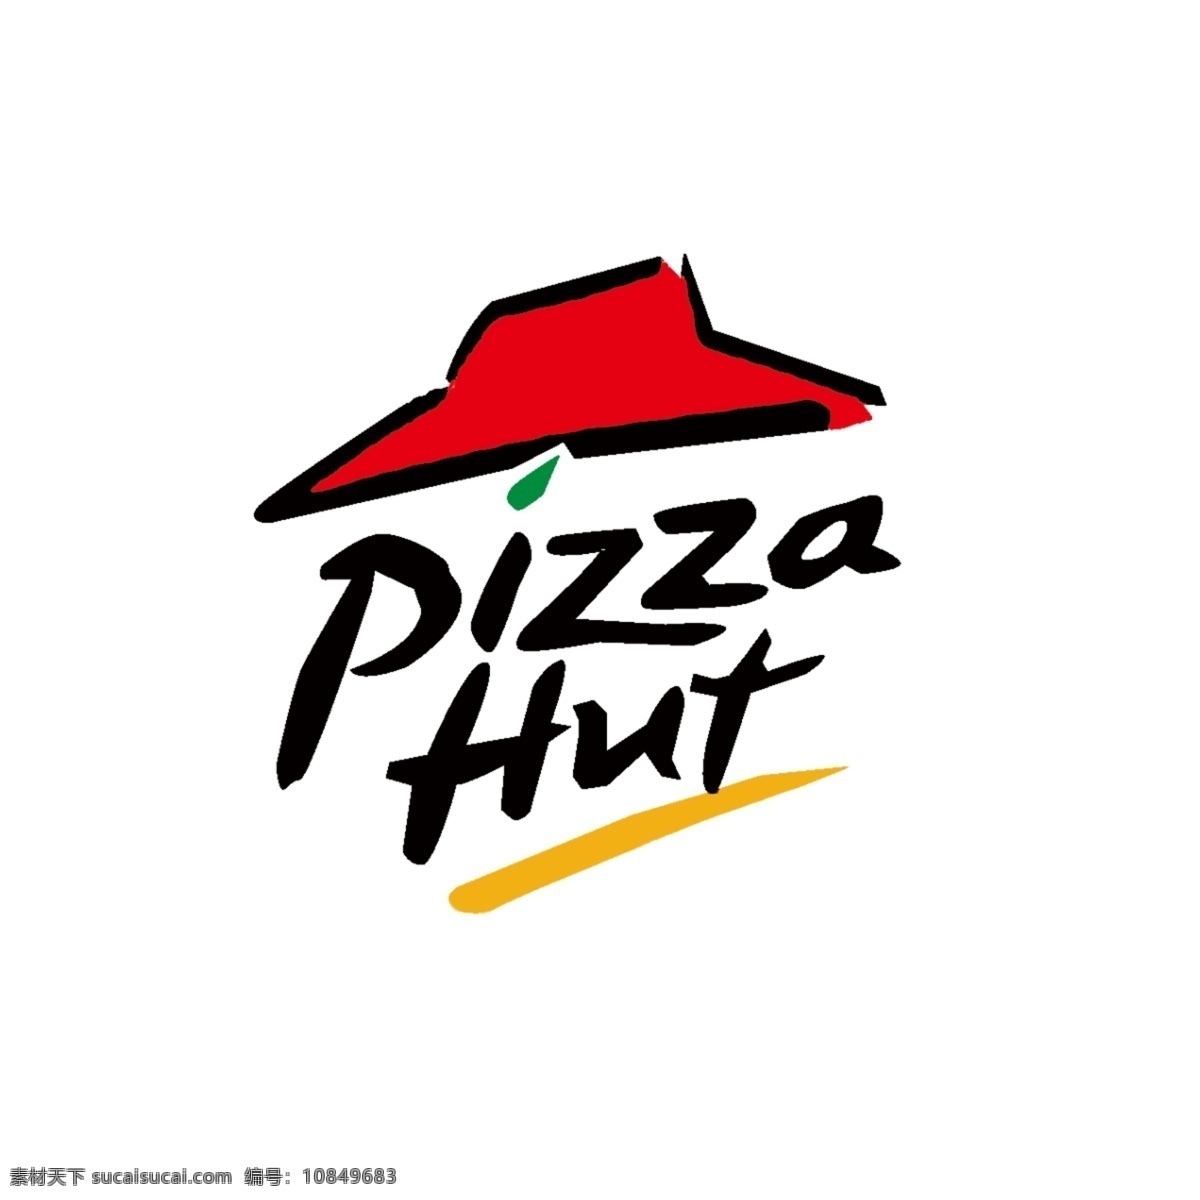 必胜客 欢乐 餐厅 logo 欢乐餐厅 pizzahut pizza 标志图标 企业 标志